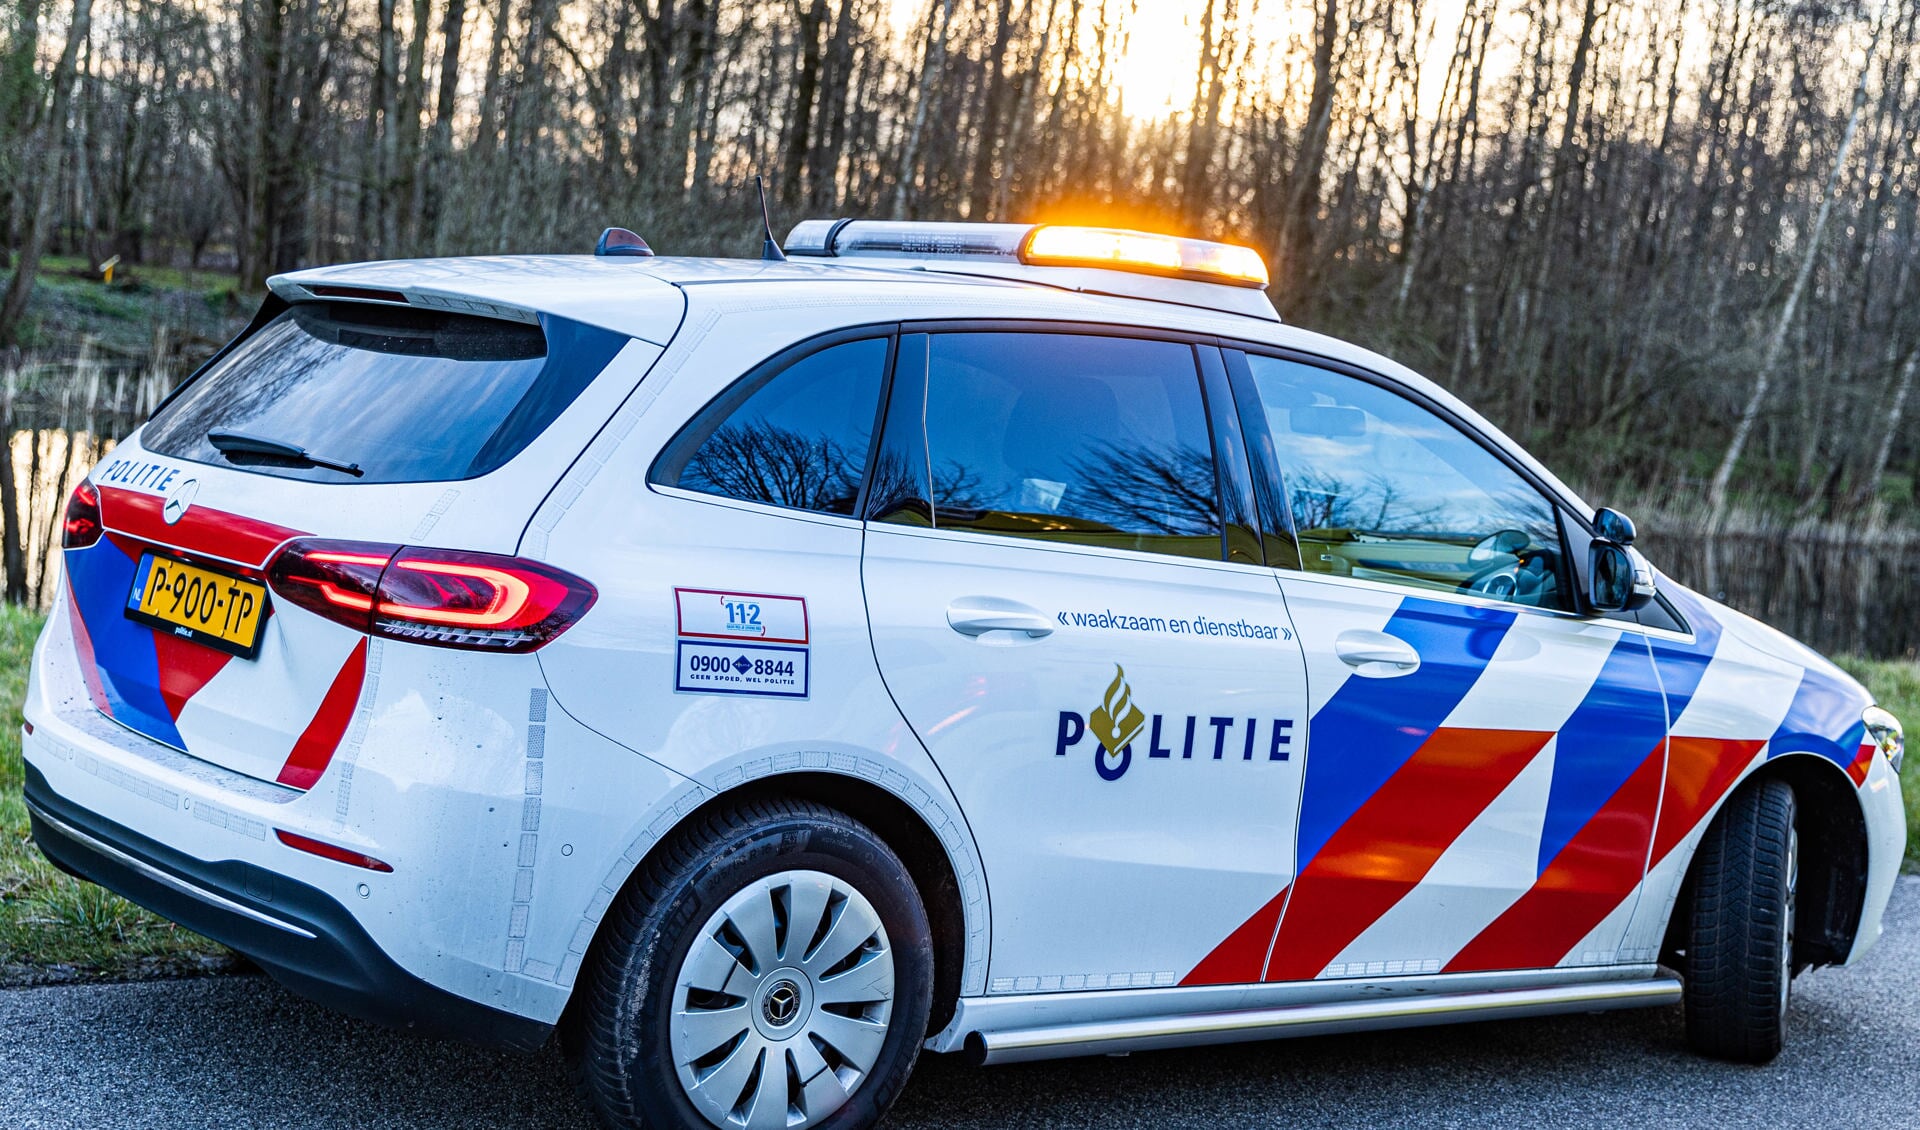 Politie De Fryske Marren hield verkeerscontroles Foto Ricardo Veen Media